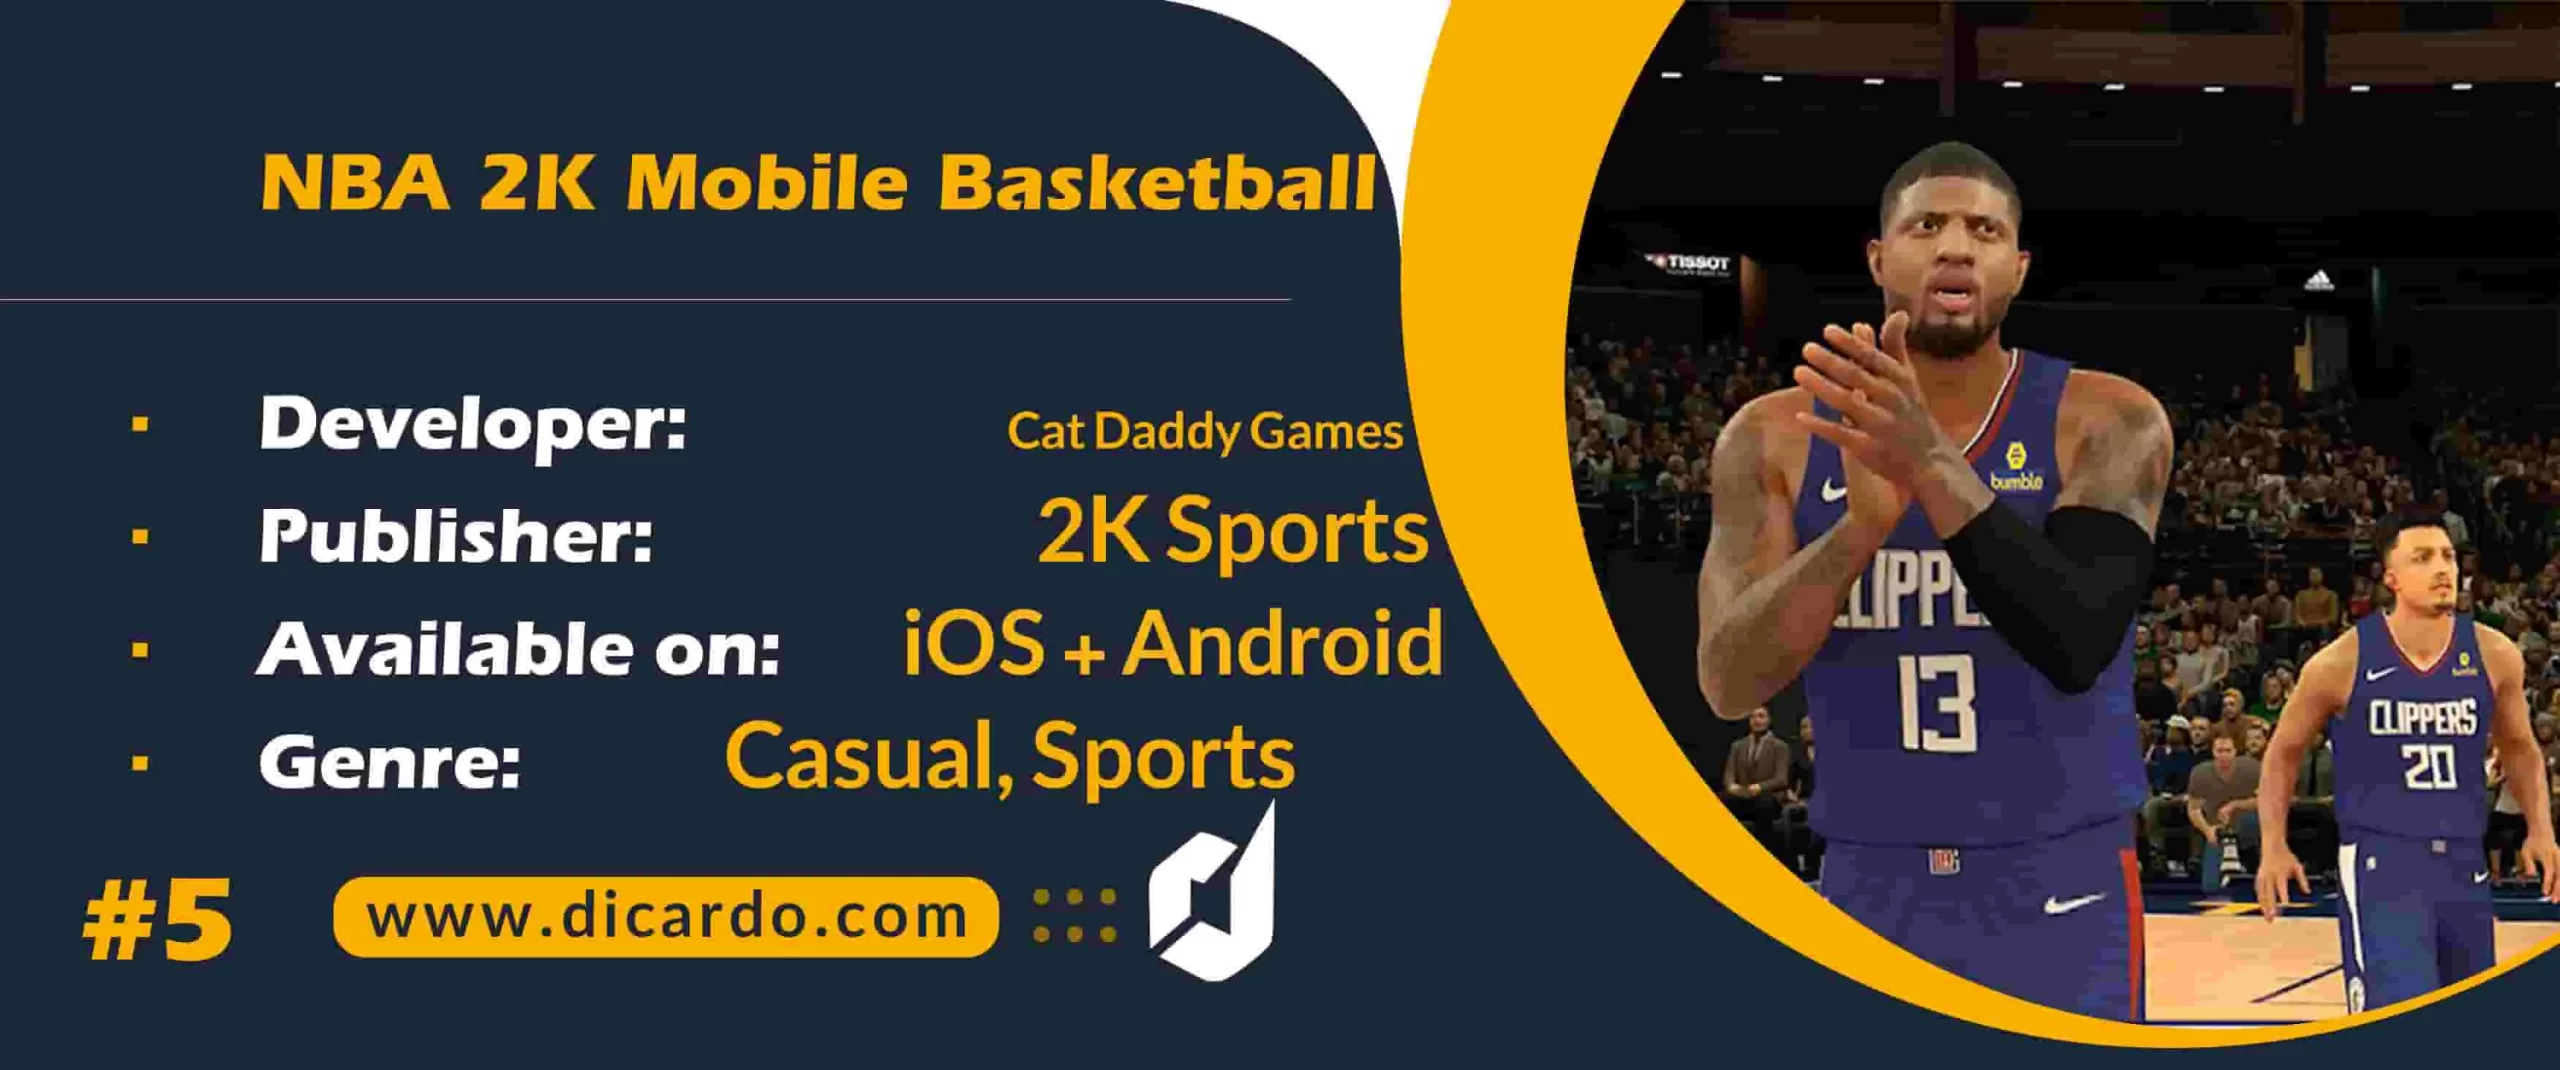 #5 ان بی ای 2 کا موبایل بسکتبال NBA 2K Mobile Basketball